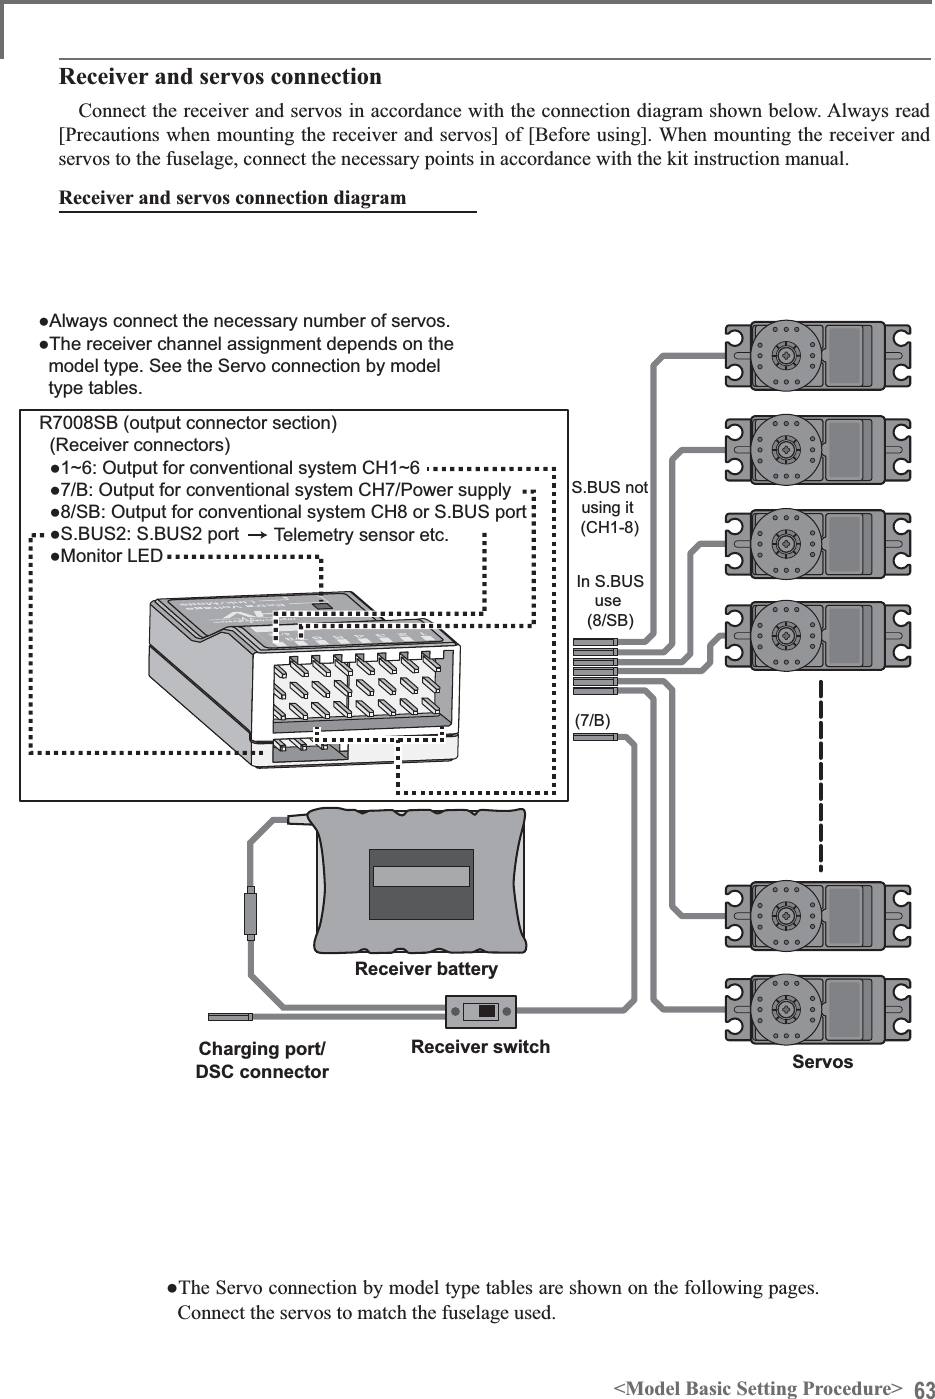 63&lt;Model Basic Setting Procedure&gt;Receiver switchReceiver batteryCharging port/ DSC connector  In S.BUSuse(8/SB)S.BUS notusing it (CH1-8)(7/B)ServosƔ$OZD\VFRQQHFWWKHQHFHVVDU\QXPEHURIVHUYRVƔ7KHUHFHLYHUFKDQQHODVVLJQPHQWGHSHQGVRQWKHPRGHOW\SH6HHWKH6HUYRFRQQHFWLRQE\PRGHOW\SHWDEOHV56%RXWSXWFRQQHFWRUVHFWLRQ5HFHLYHUFRQQHFWRUVƔa2XWSXWIRUFRQYHQWLRQDOV\VWHP&amp;+aƔ%2XWSXWIRUFRQYHQWLRQDOV\VWHP&amp;+3RZHUVXSSO\Ɣ6%2XWSXWIRUFRQYHQWLRQDOV\VWHP&amp;+RU6%86SRUWƔ6%866%86SRUWƔ0RQLWRU/(&apos;7HOHPHWU\VHQVRUHWF5HFHLYHUDQGVHUYRVFRQQHFWLRQGLDJUDPReceiver and servos connectionConnect the receiver and servos in accordance with the connection diagram shown below. Always read [Precautions when mounting the receiver and servos] of [Before using]. When mounting the receiver and servos to the fuselage, connect the necessary points in accordance with the kit instruction manual.Ɣ7KH6HUYRFRQQHFWLRQE\PRGHOW\SHWDEOHVDUHVKRZQRQWKHIROORZLQJSDJHVConnect the servos to match the fuselage used.